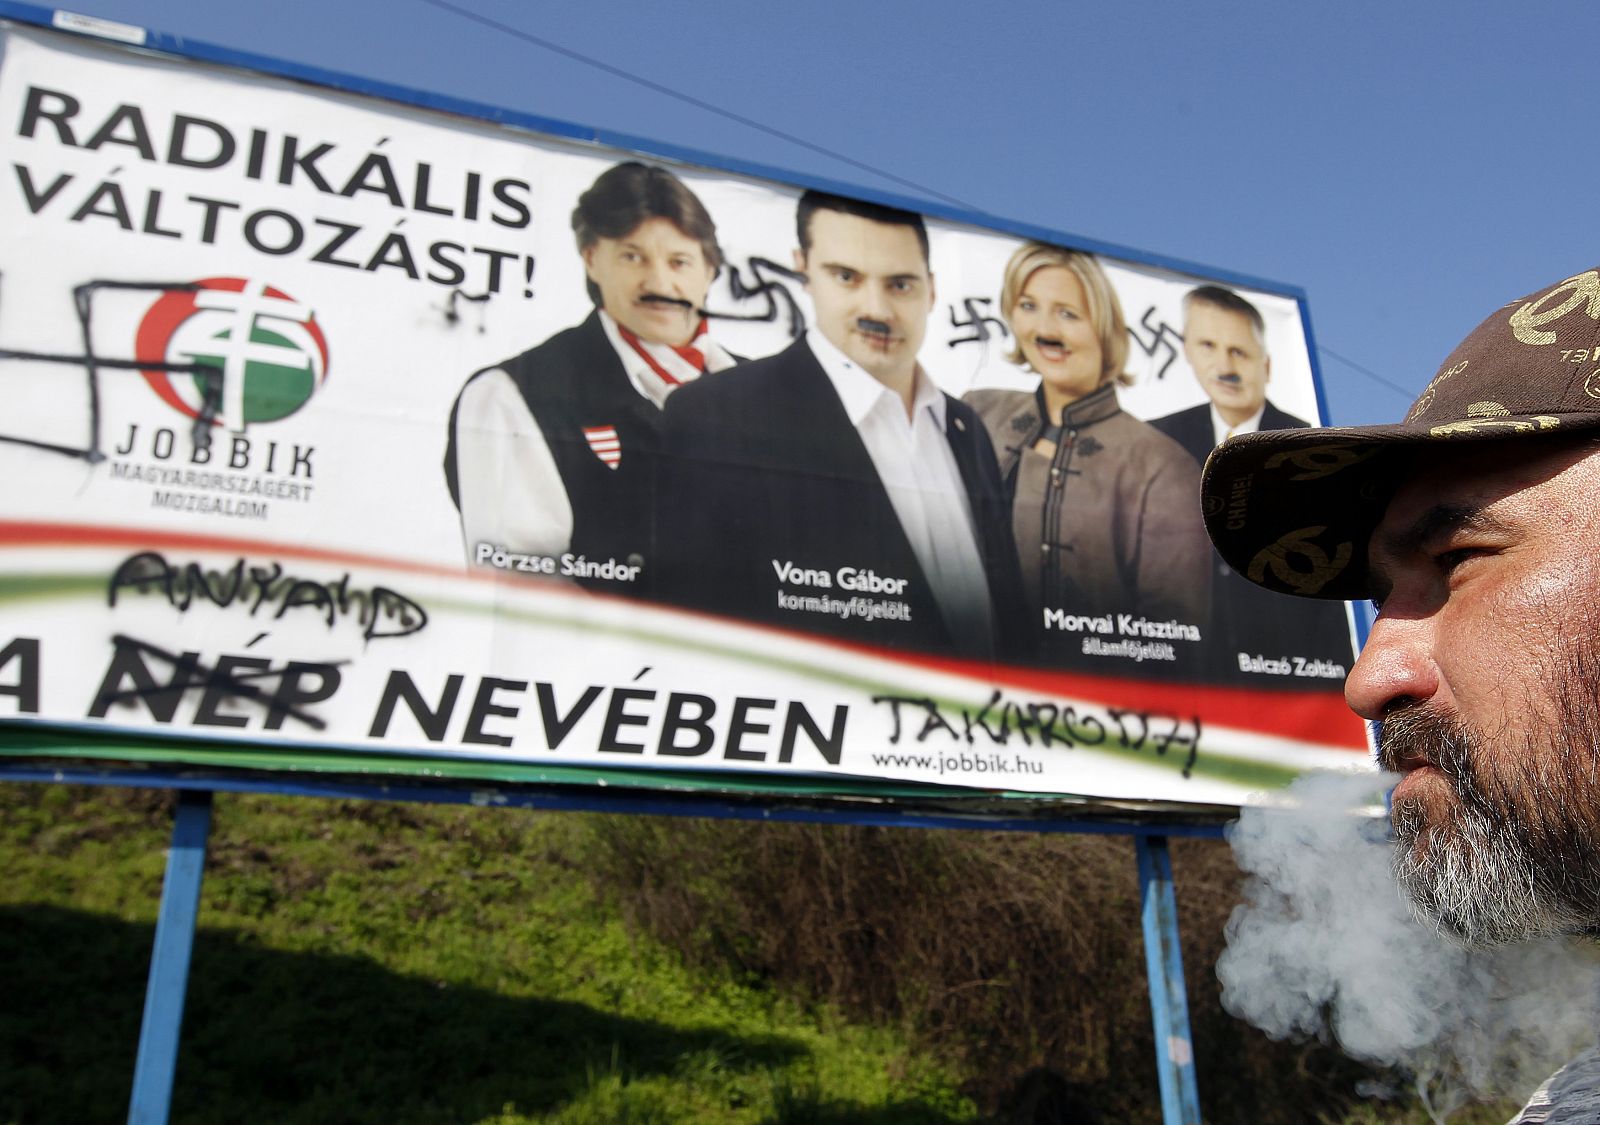 Un vagabundo fuma frente a un cartel del partido Jobbik pintado con símbolos nazis.